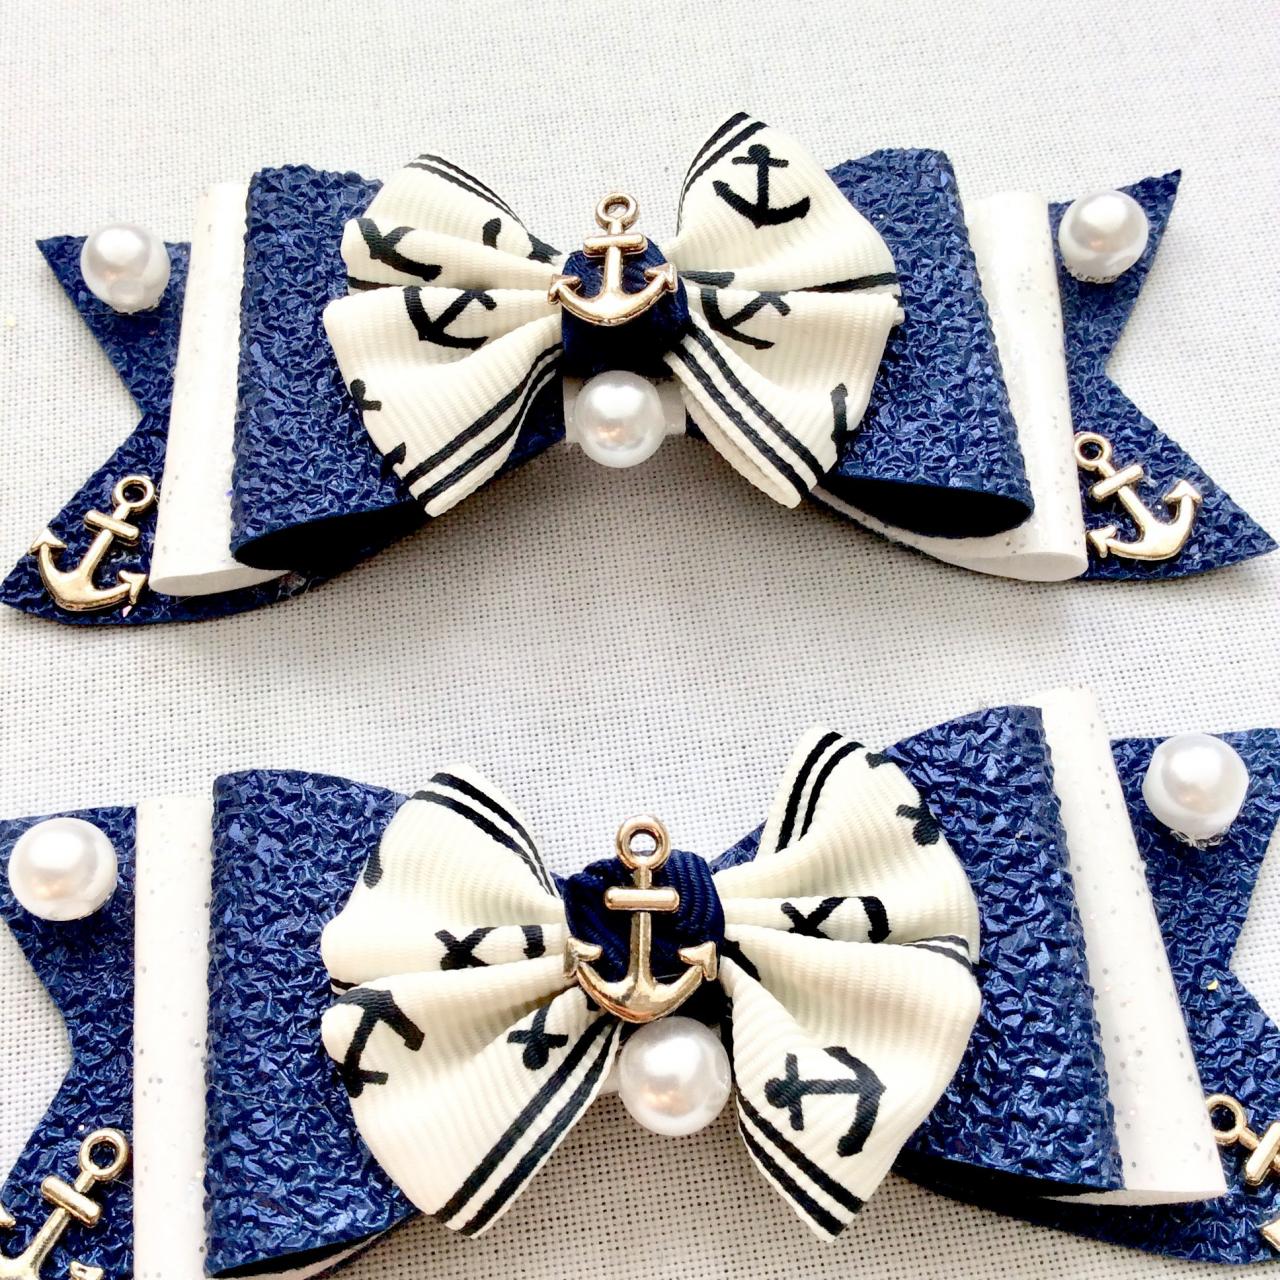 2 Sailor hair bows lolita blue white pearls anchor charms rockabilly vintage maritime sea kawaii glitter ribbon beach brooch pin hair clip